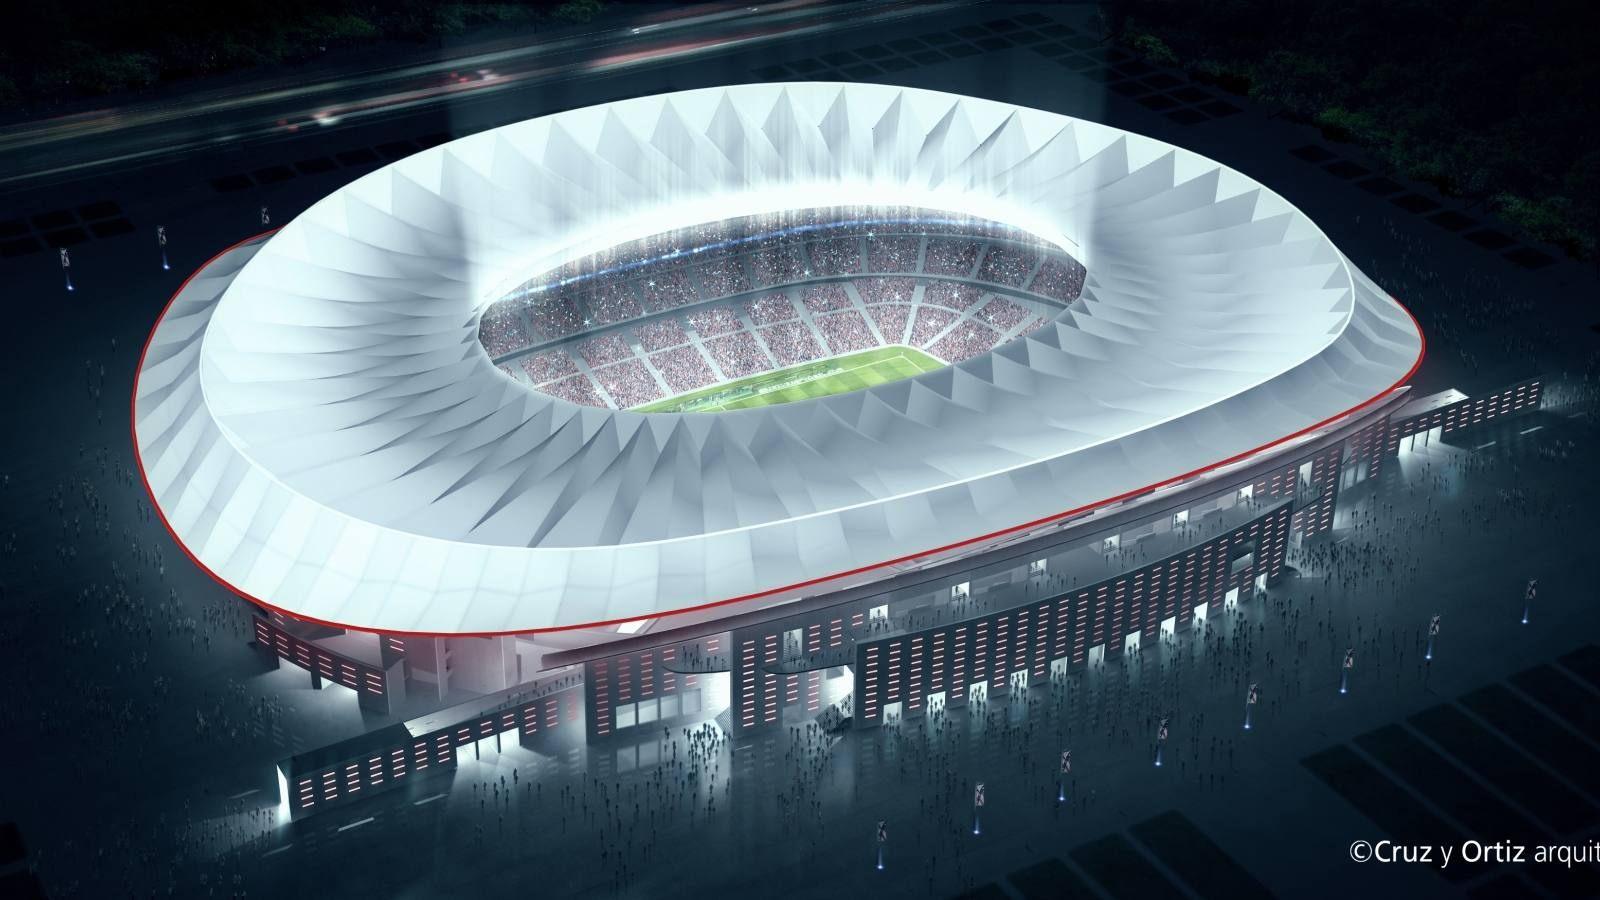 Design: Wanda Metropolitano